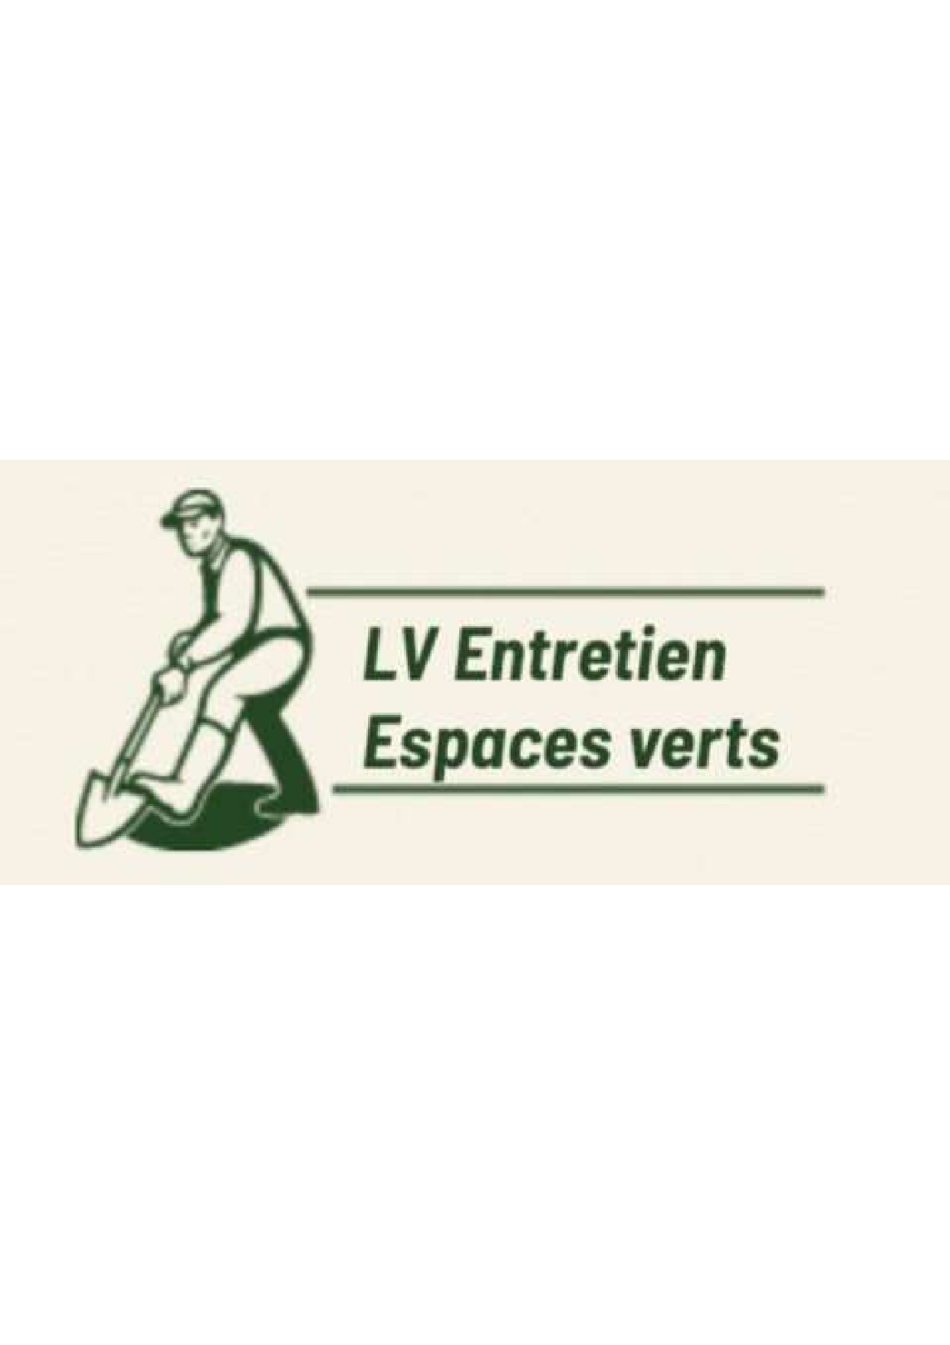 LV Entretien Logo